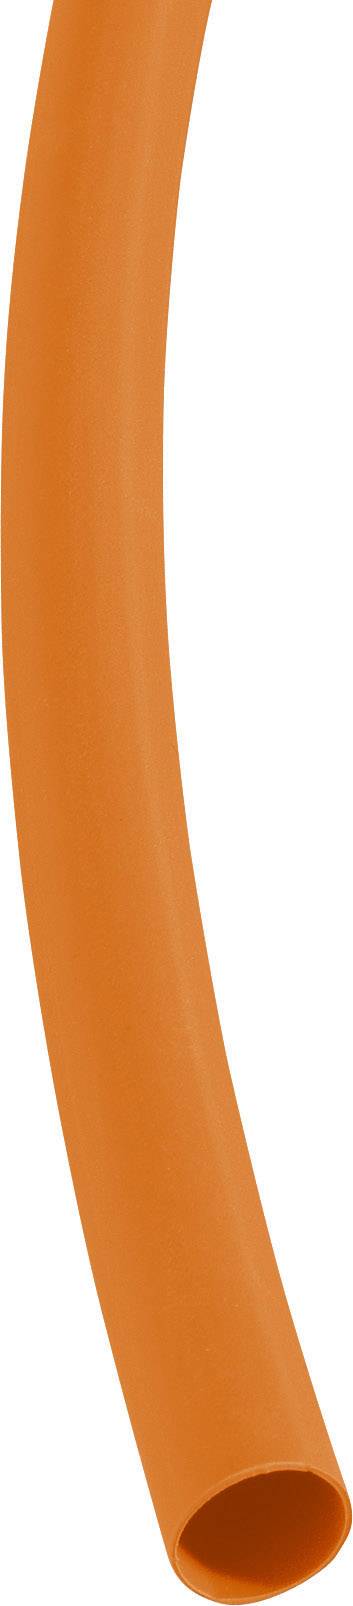 Smršťovací bužírka bez lepidla DSG Canusa 3290240203 3:1, -55 - +135 °C, 25.40 mm, oranžová, metrové zboží